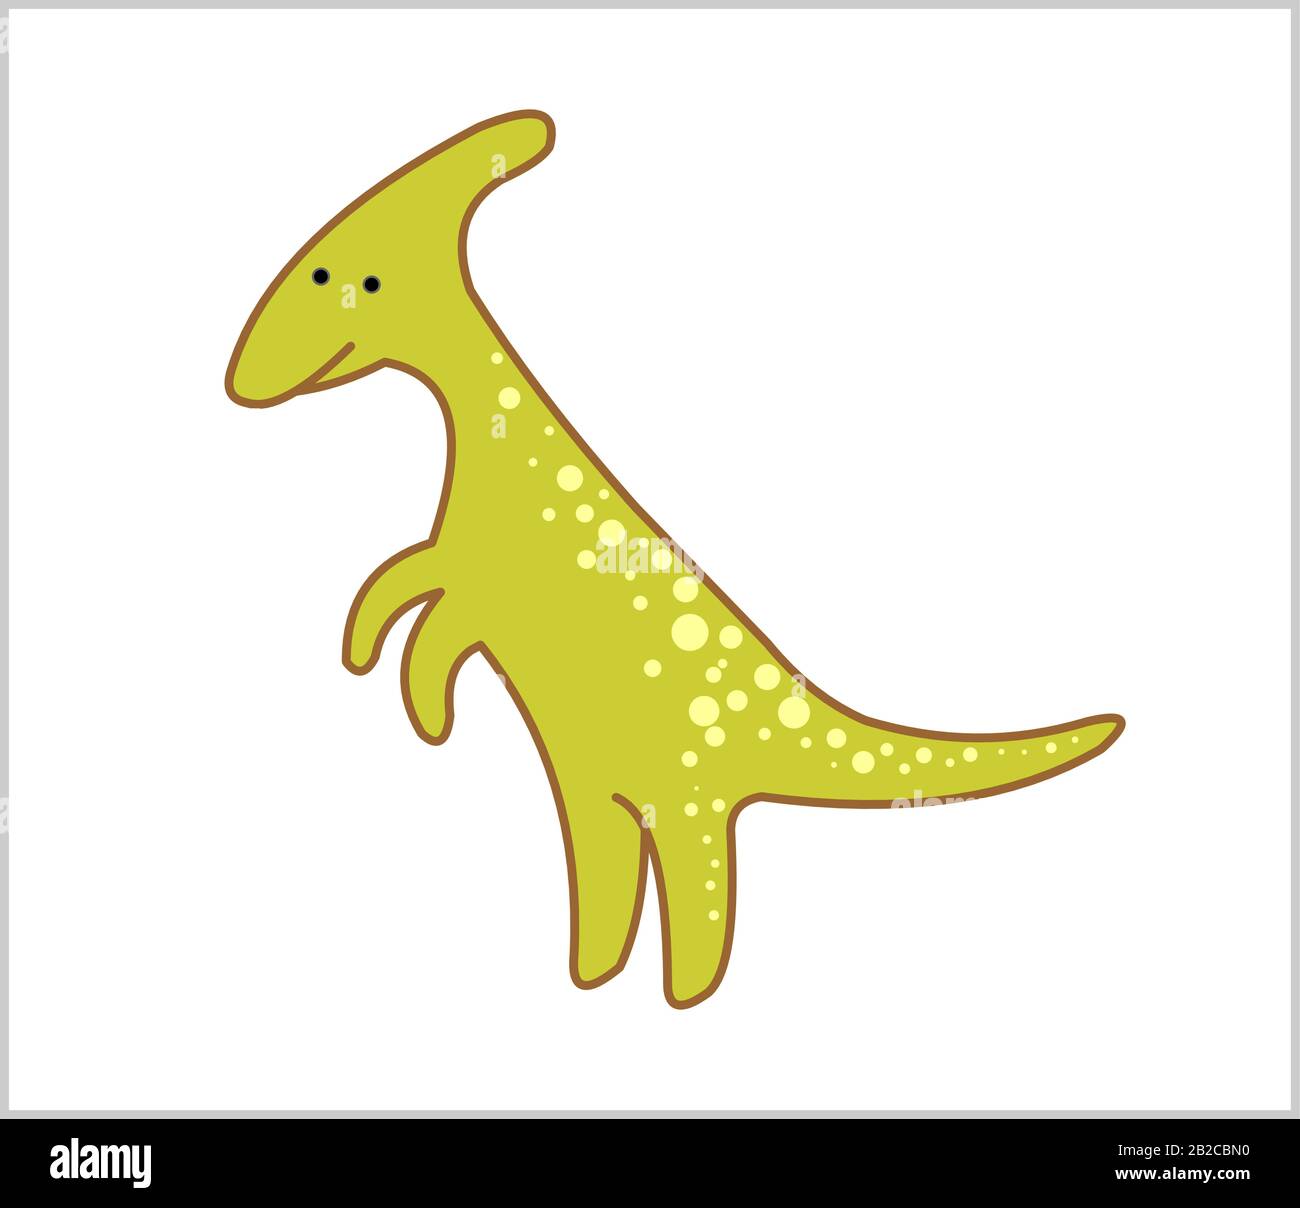 Carino Erbivoro Dinosauro, Dino. Parasaurolofo. Per la stampa. Moderna immagine vettoriale piatta Isolata su sfondo bianco. Illustrazione Vettoriale